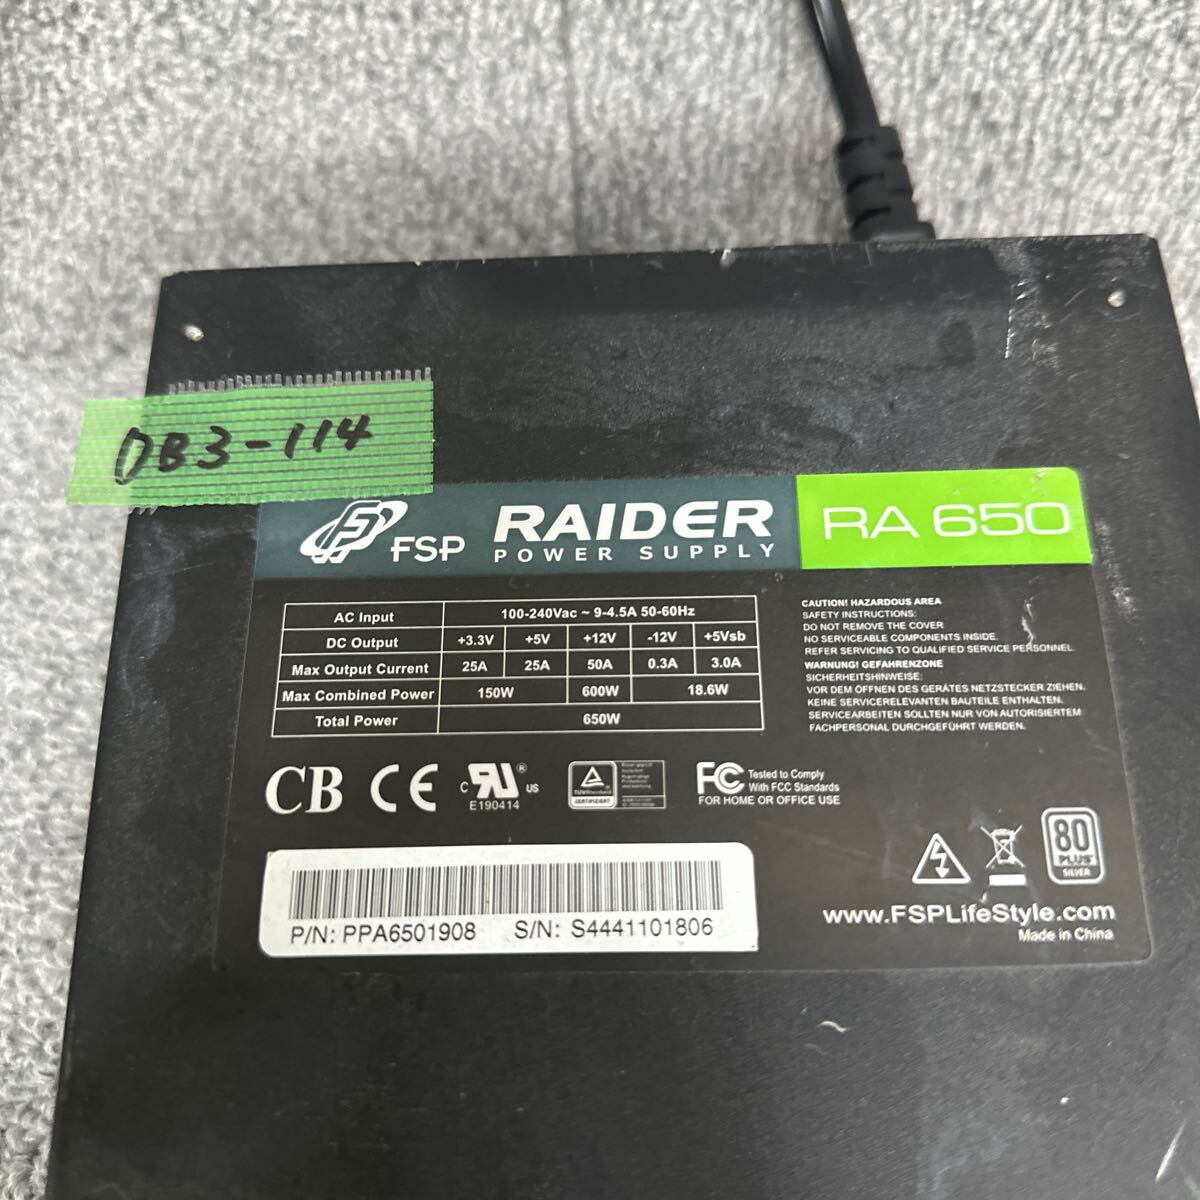 DB3-114 супер-скидка PC источник питания BOX FSP RAIDER RA650 650W 80PLUS SILVER источник питания источник питания тестер .. напряжение подтверждено б/у товар 